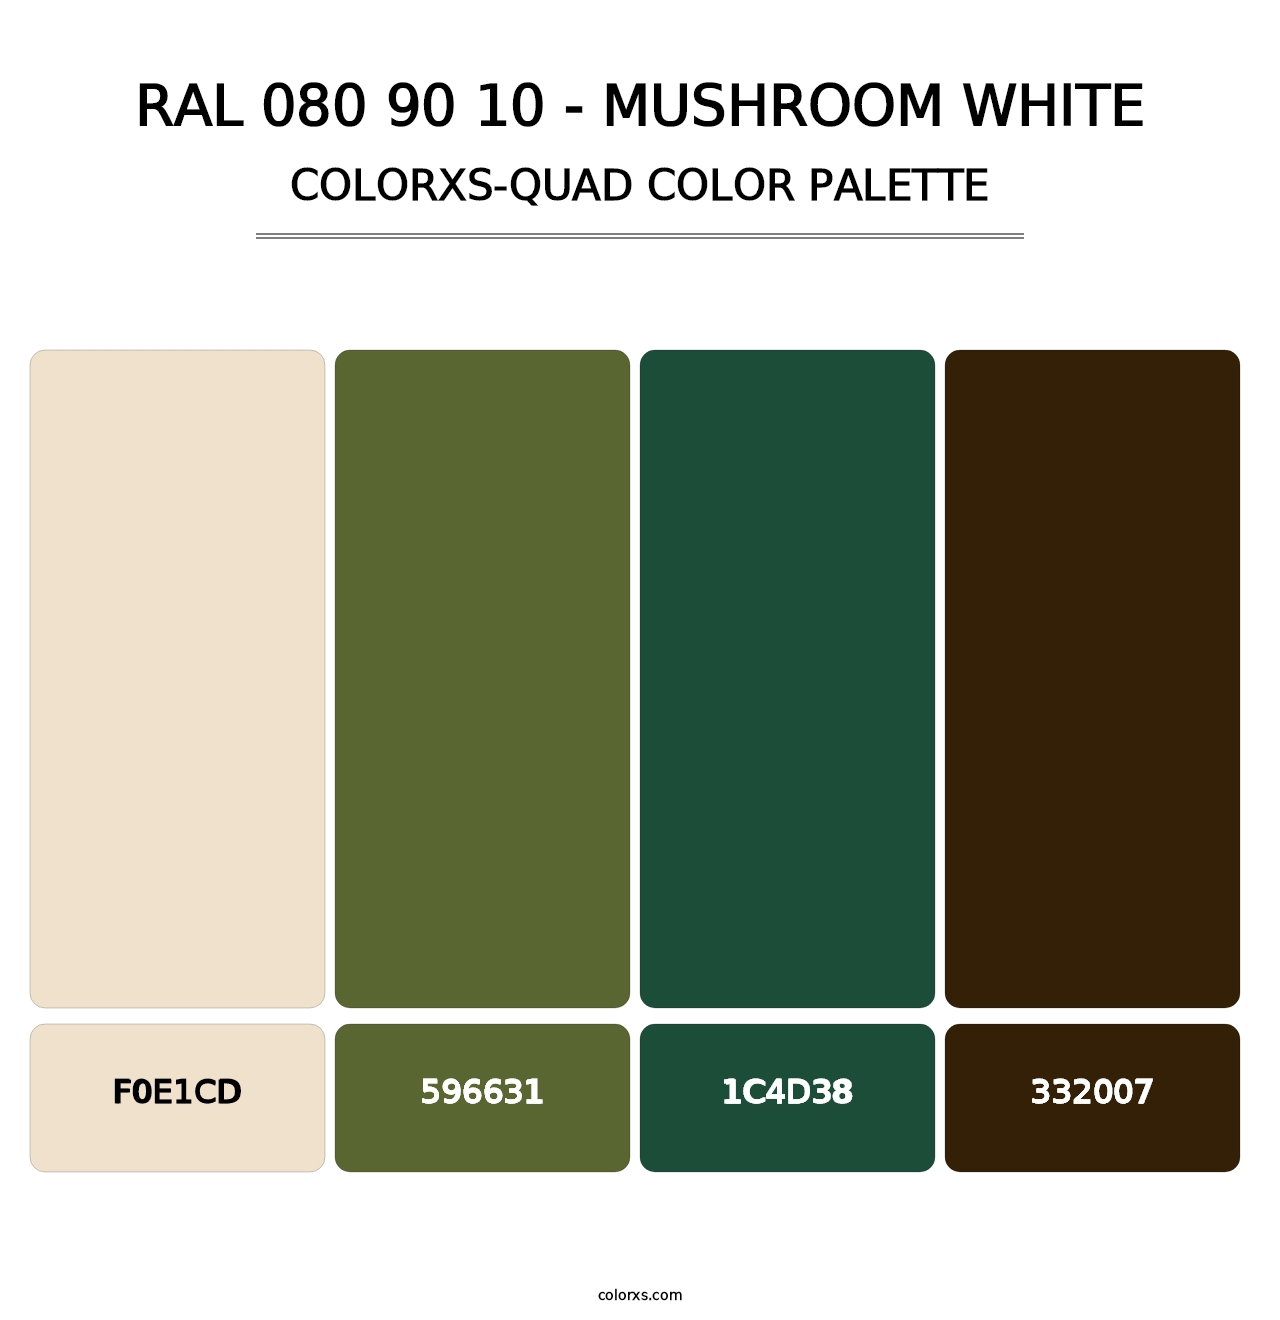 RAL 080 90 10 - Mushroom White - Colorxs Quad Palette